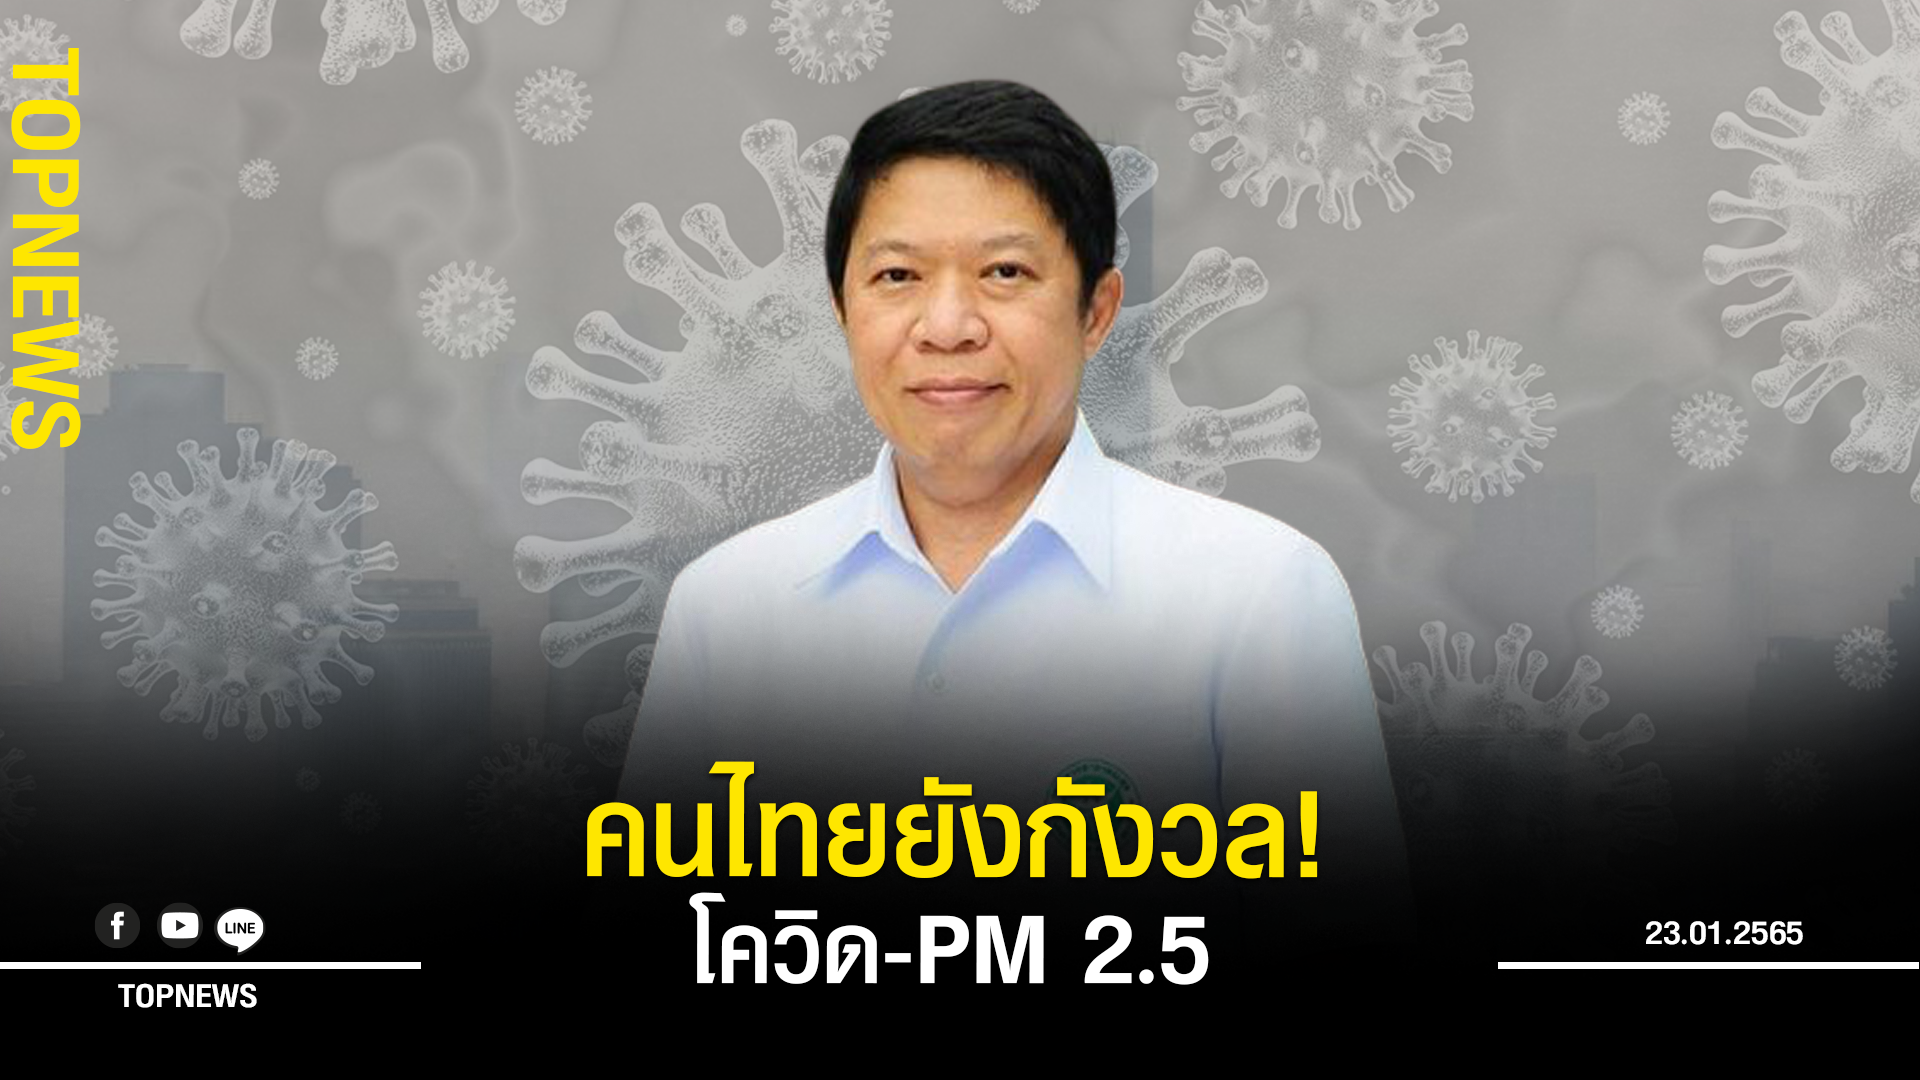 “อนามัยโพล” ชี้คนไทยยังกังวล การระบาดของโควิด-PM 2.5 ช่วงตรุษจีน!